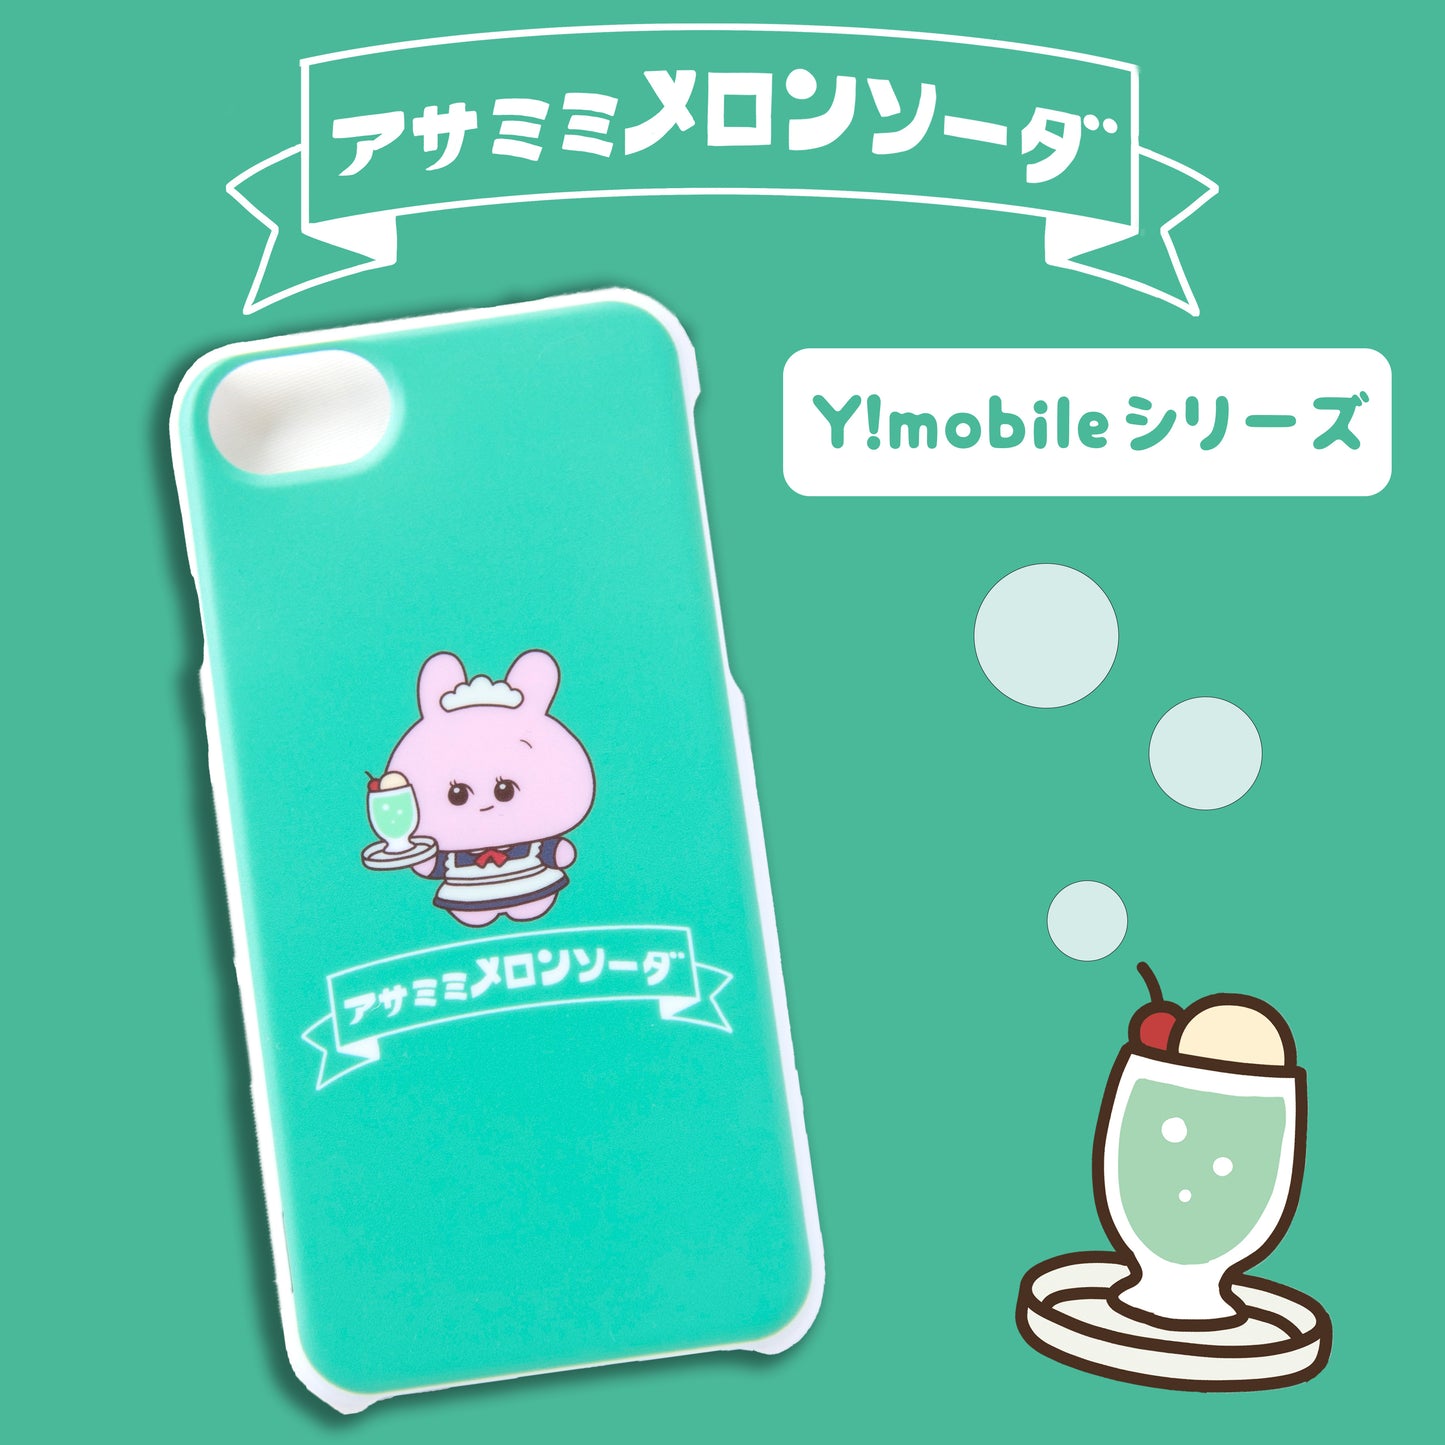 [Asamimi-chan] Smartphone-Hülle kompatibel mit fast allen Modellen (Melon Soda) Y!mobile-Serie [Auf Bestellung gefertigt]